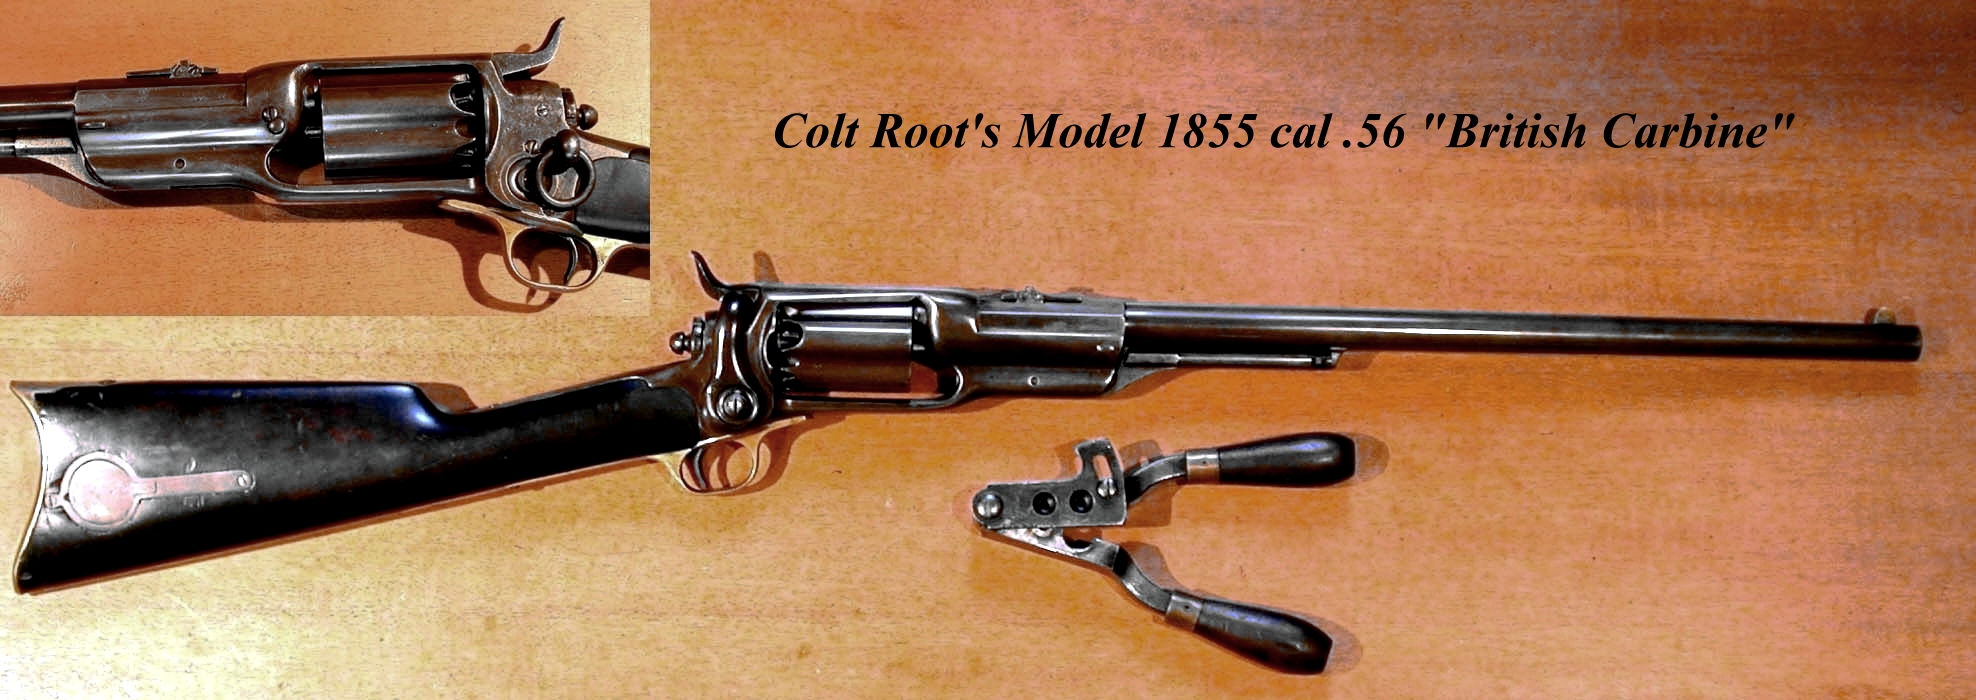 wpid-Colt_Roots_British_Carbine.JPG